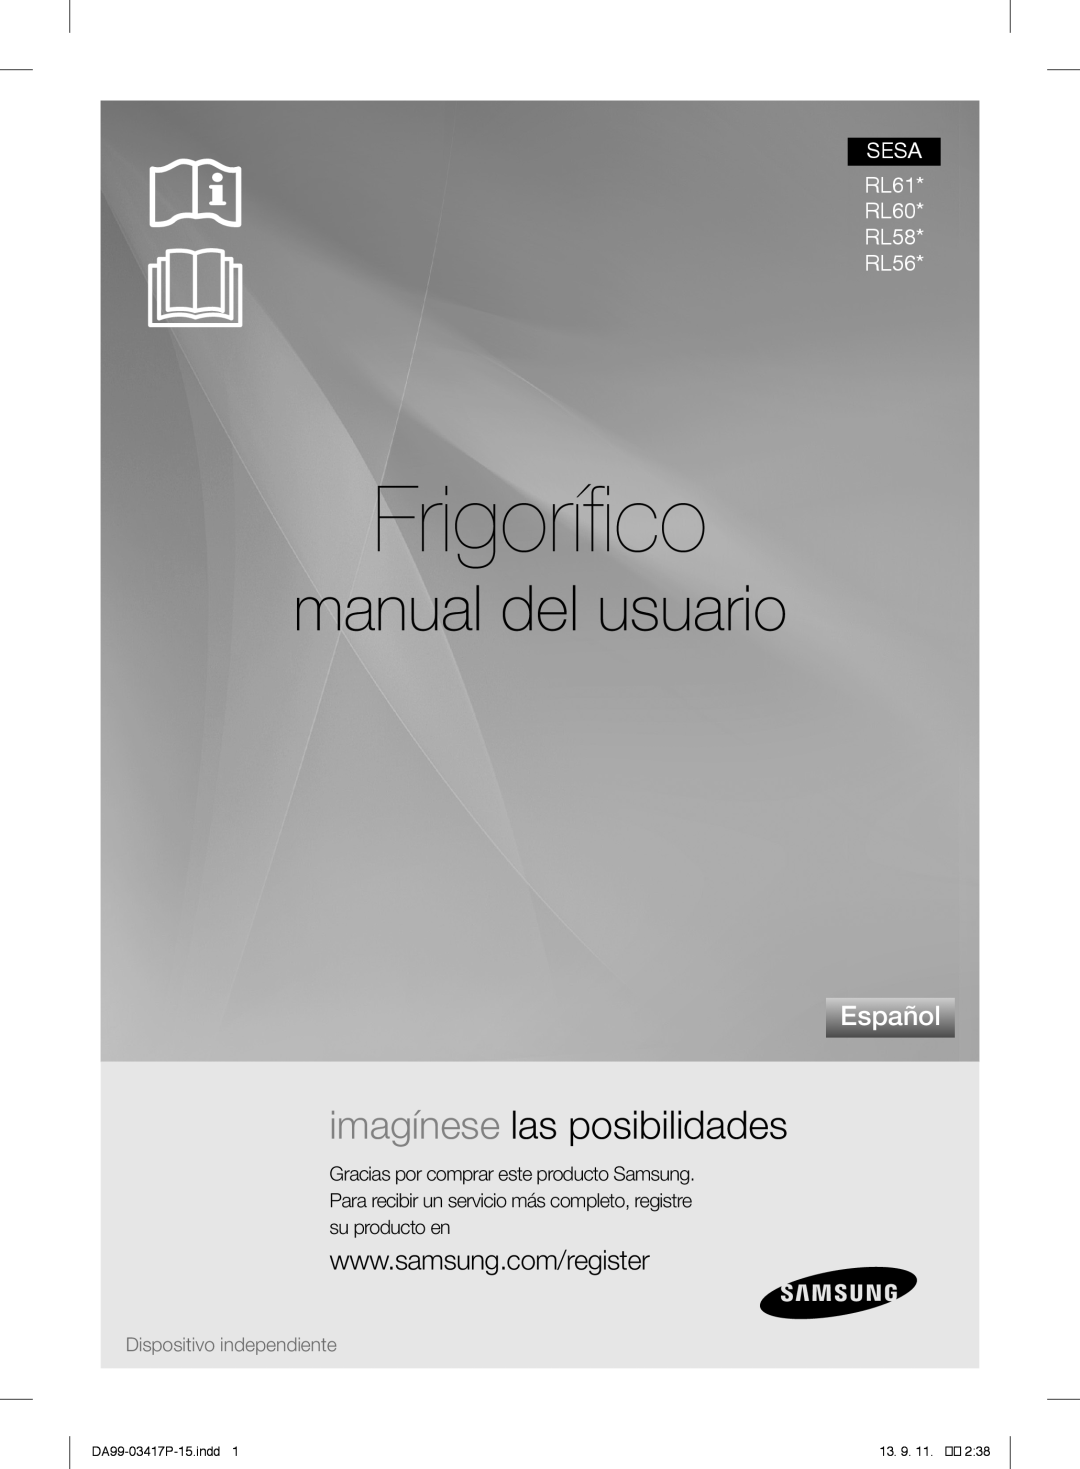 Samsung RL56GREIH1/XEF manual Frigorífico, manual del usuario, imagínese las posibilidades, Español, DA99-03417P-15.indd 